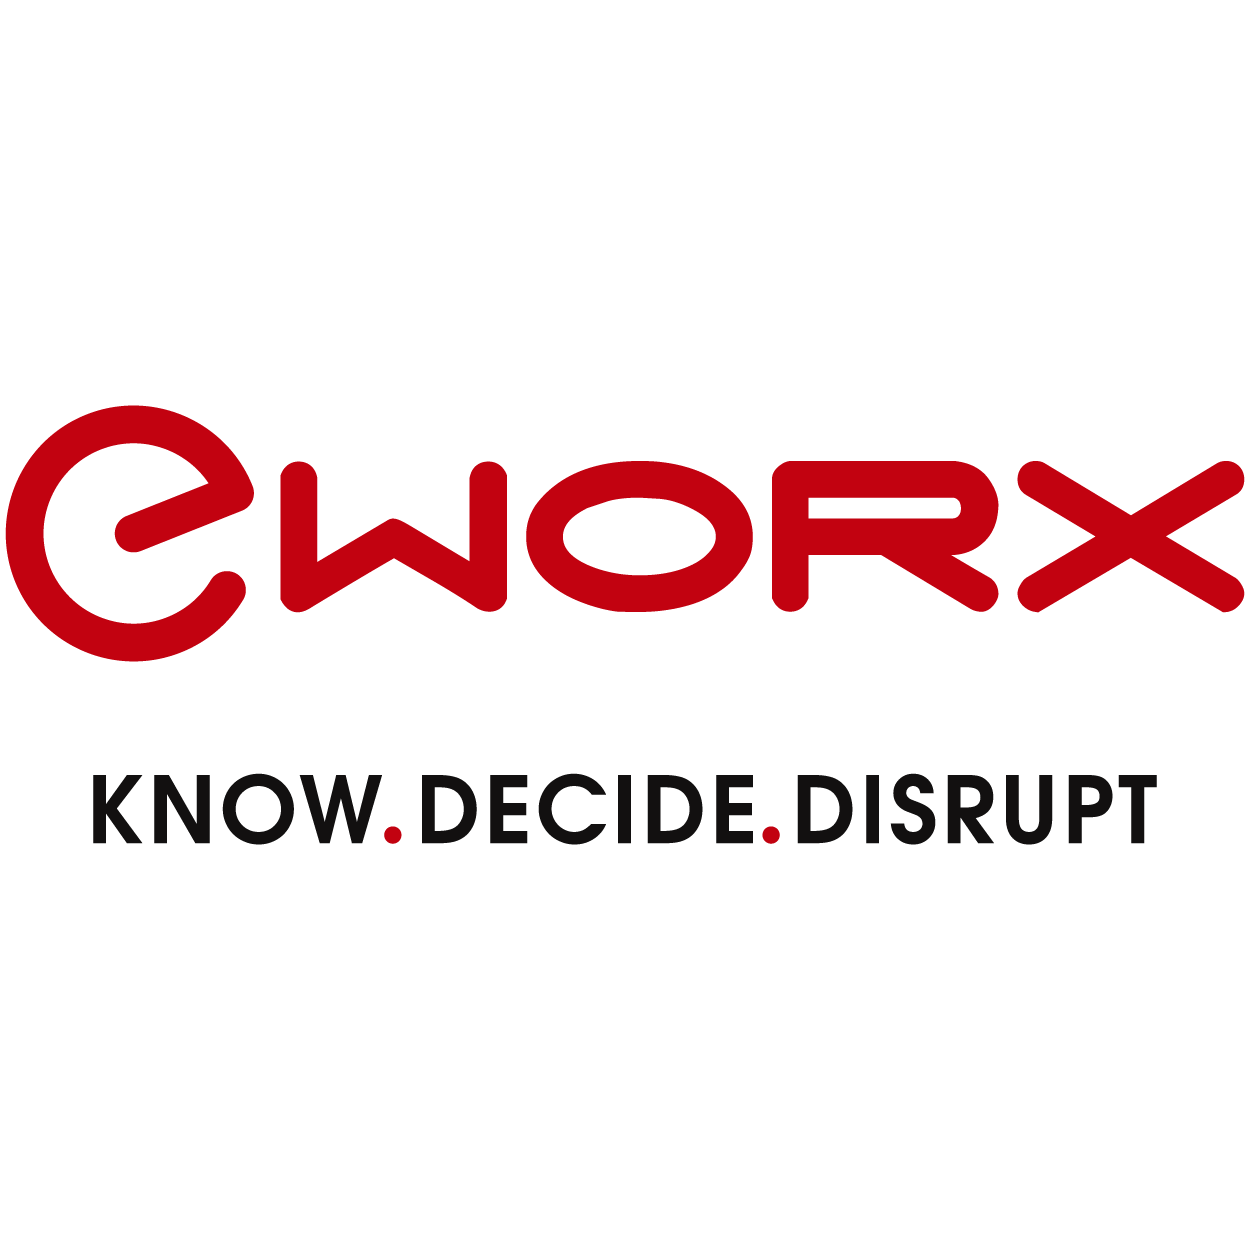 Eworx_logo_(1)